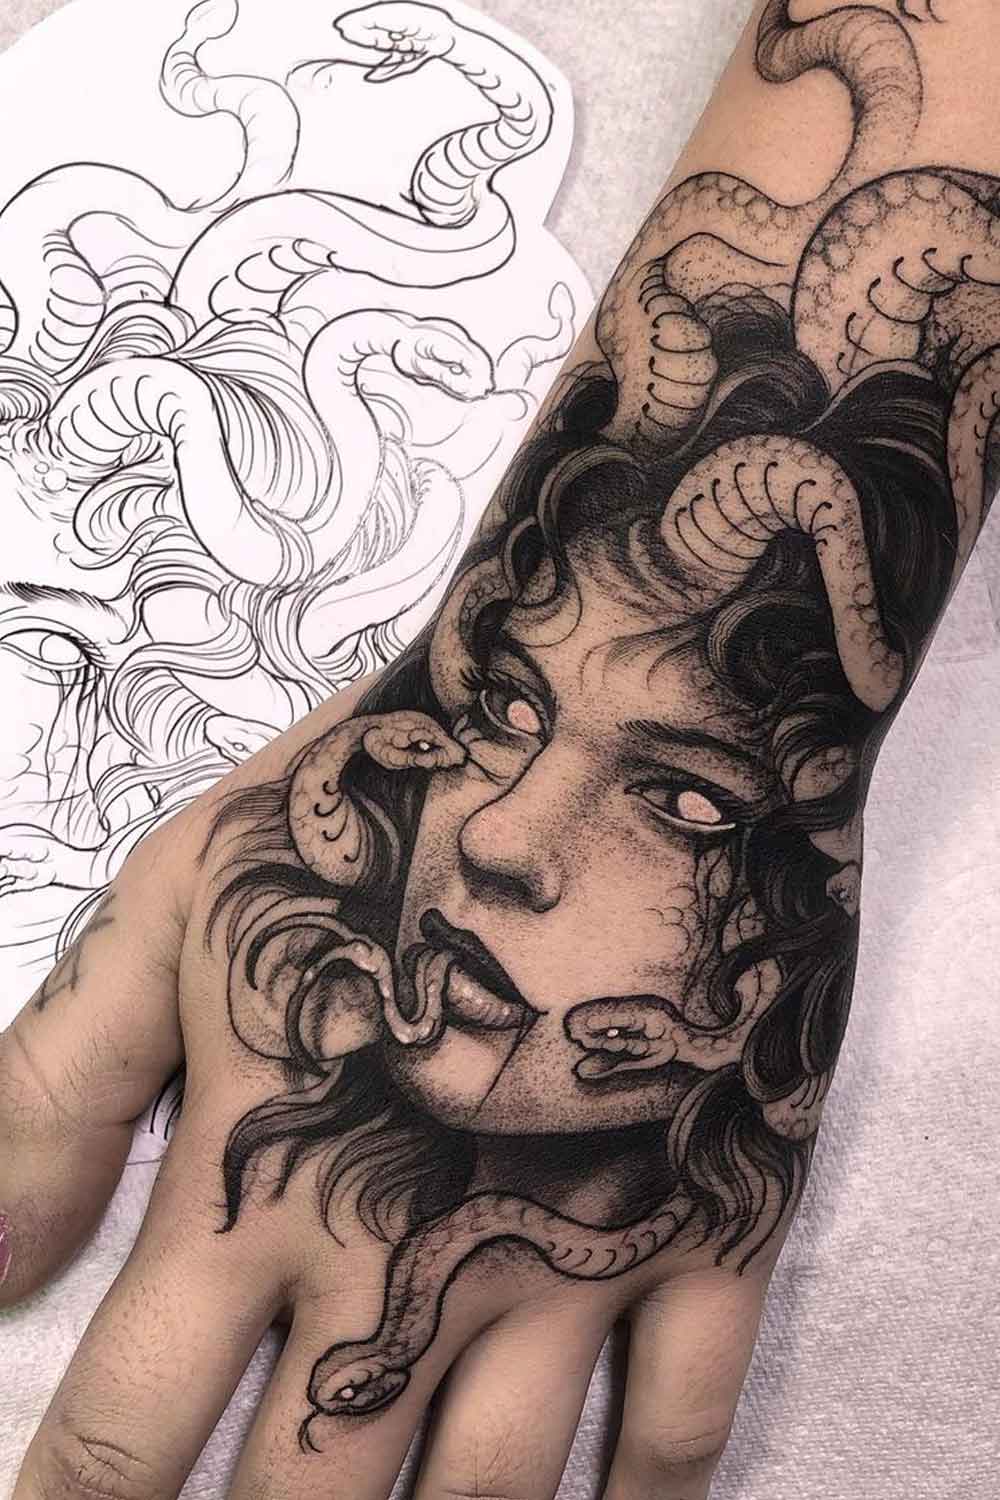 Symbolism in Medusa Tattoos